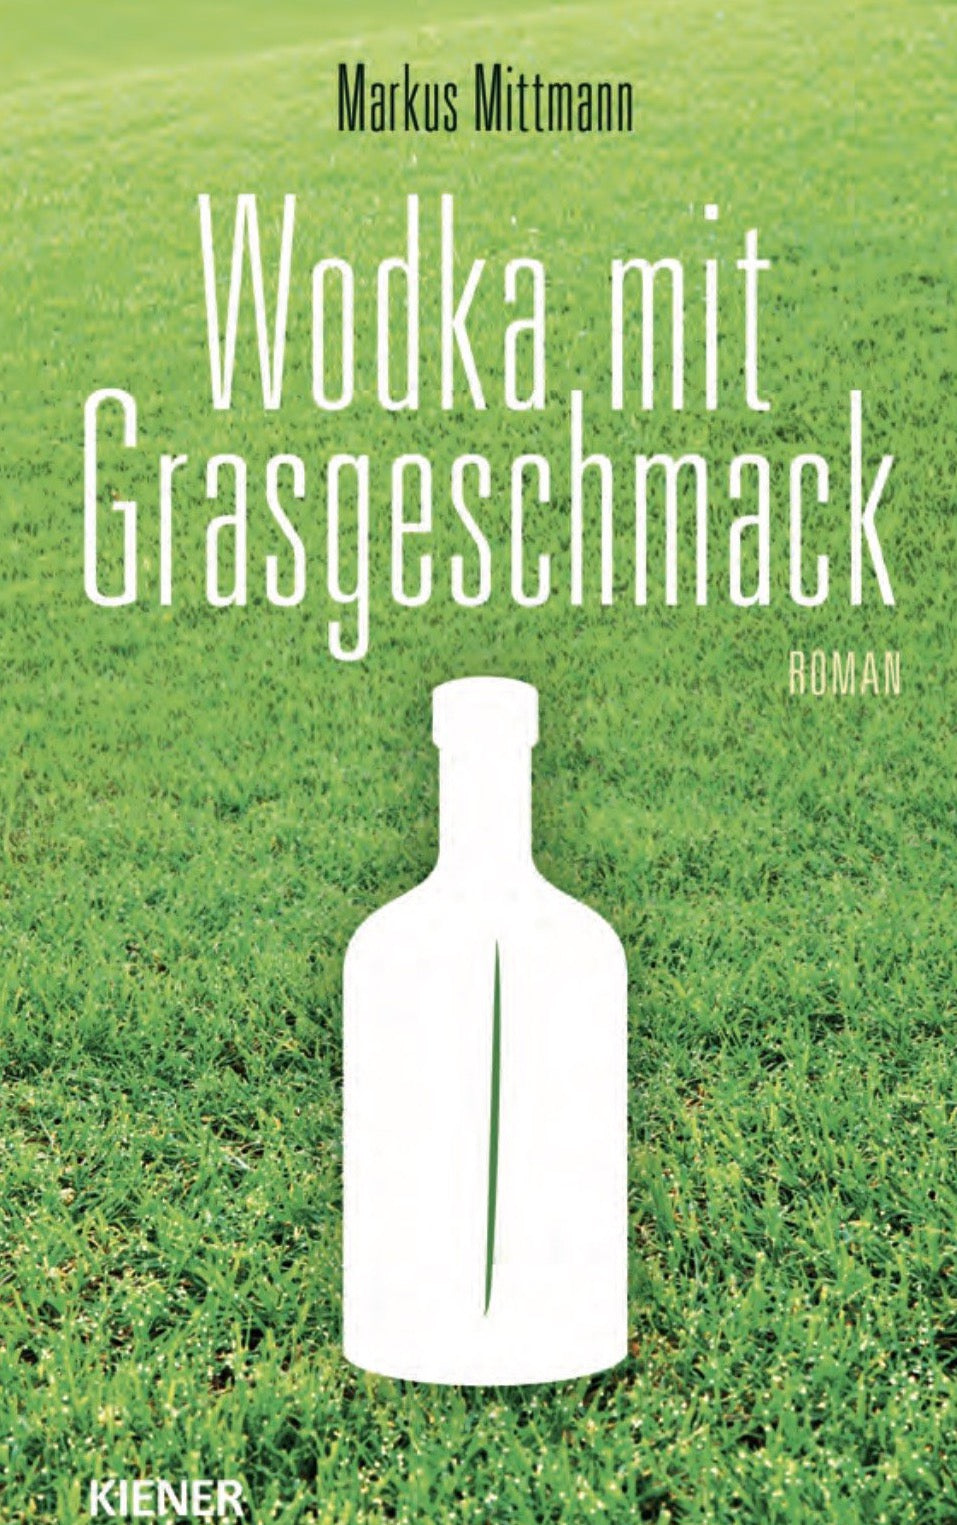 Markus Mittmann: Wodka mit Grasgeschmack